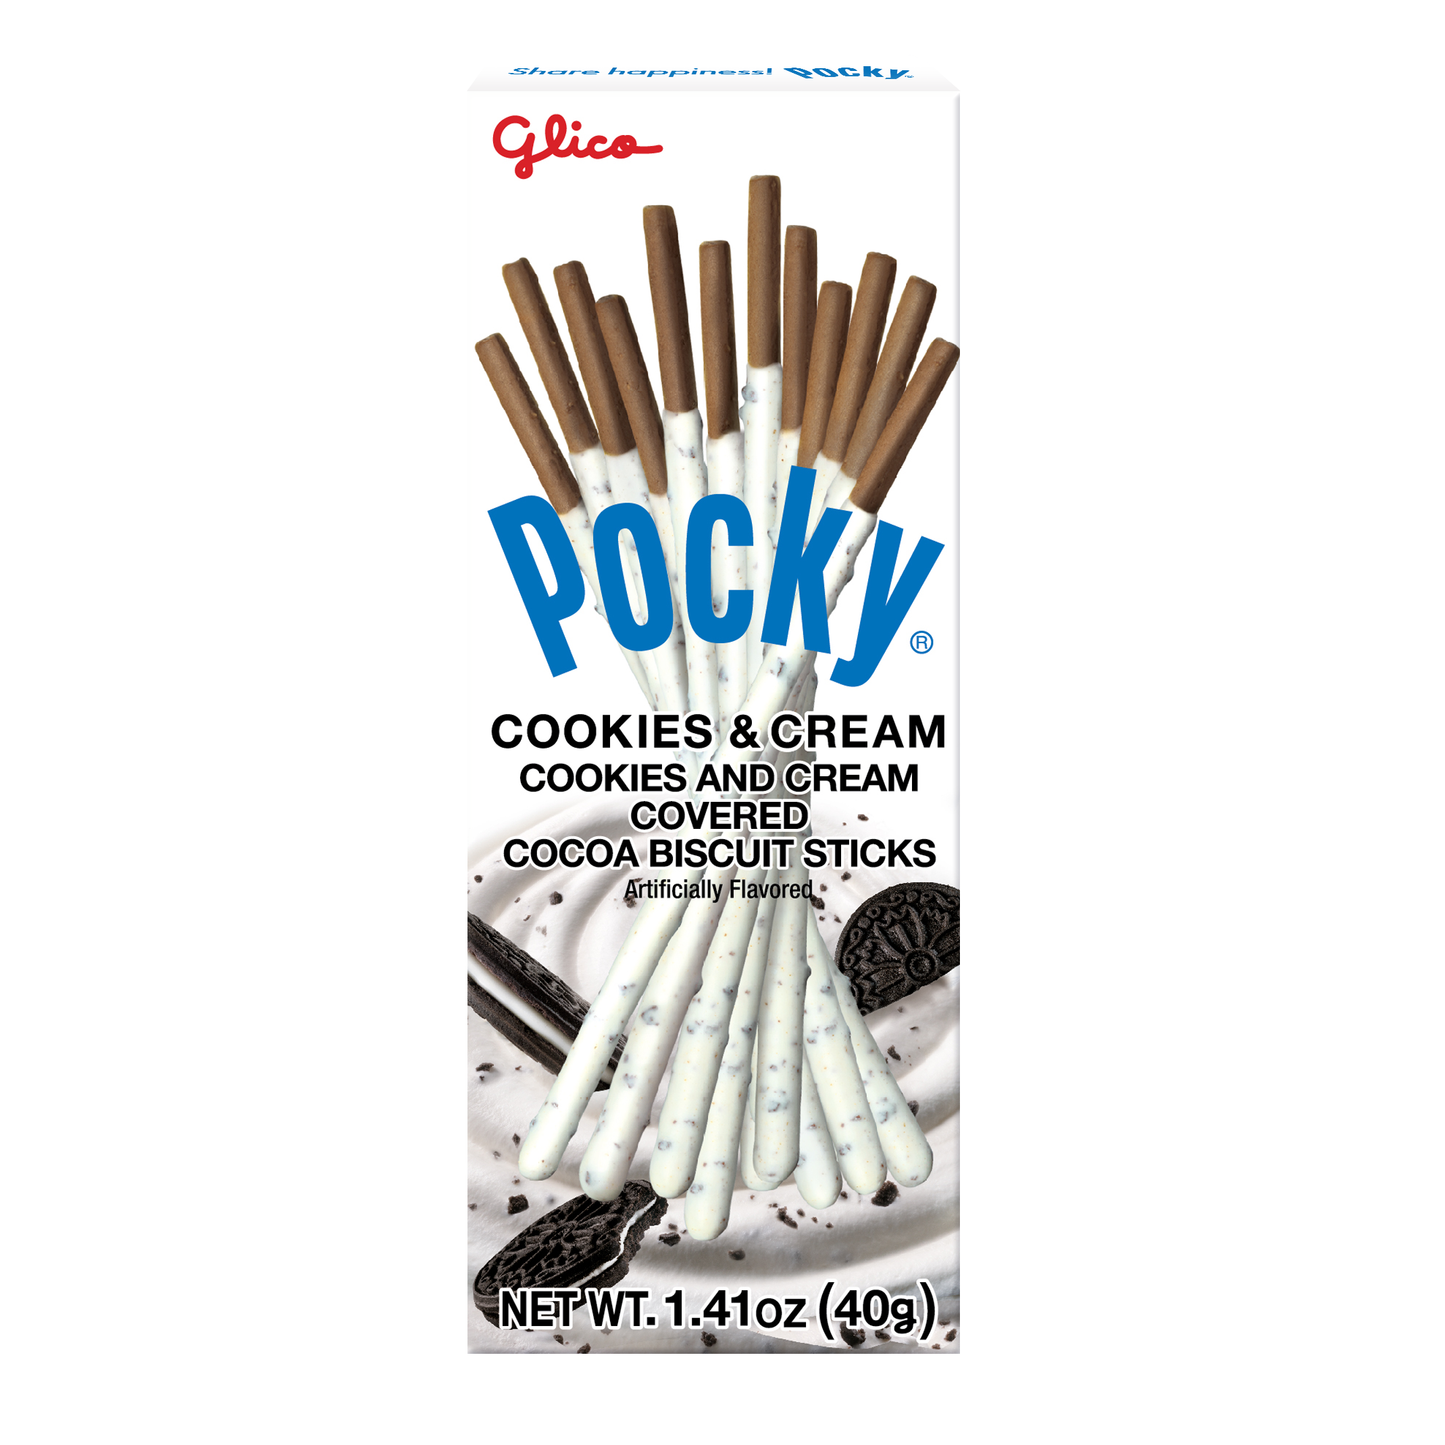 Pocky Cookies & Cream 1.41oz 10ct